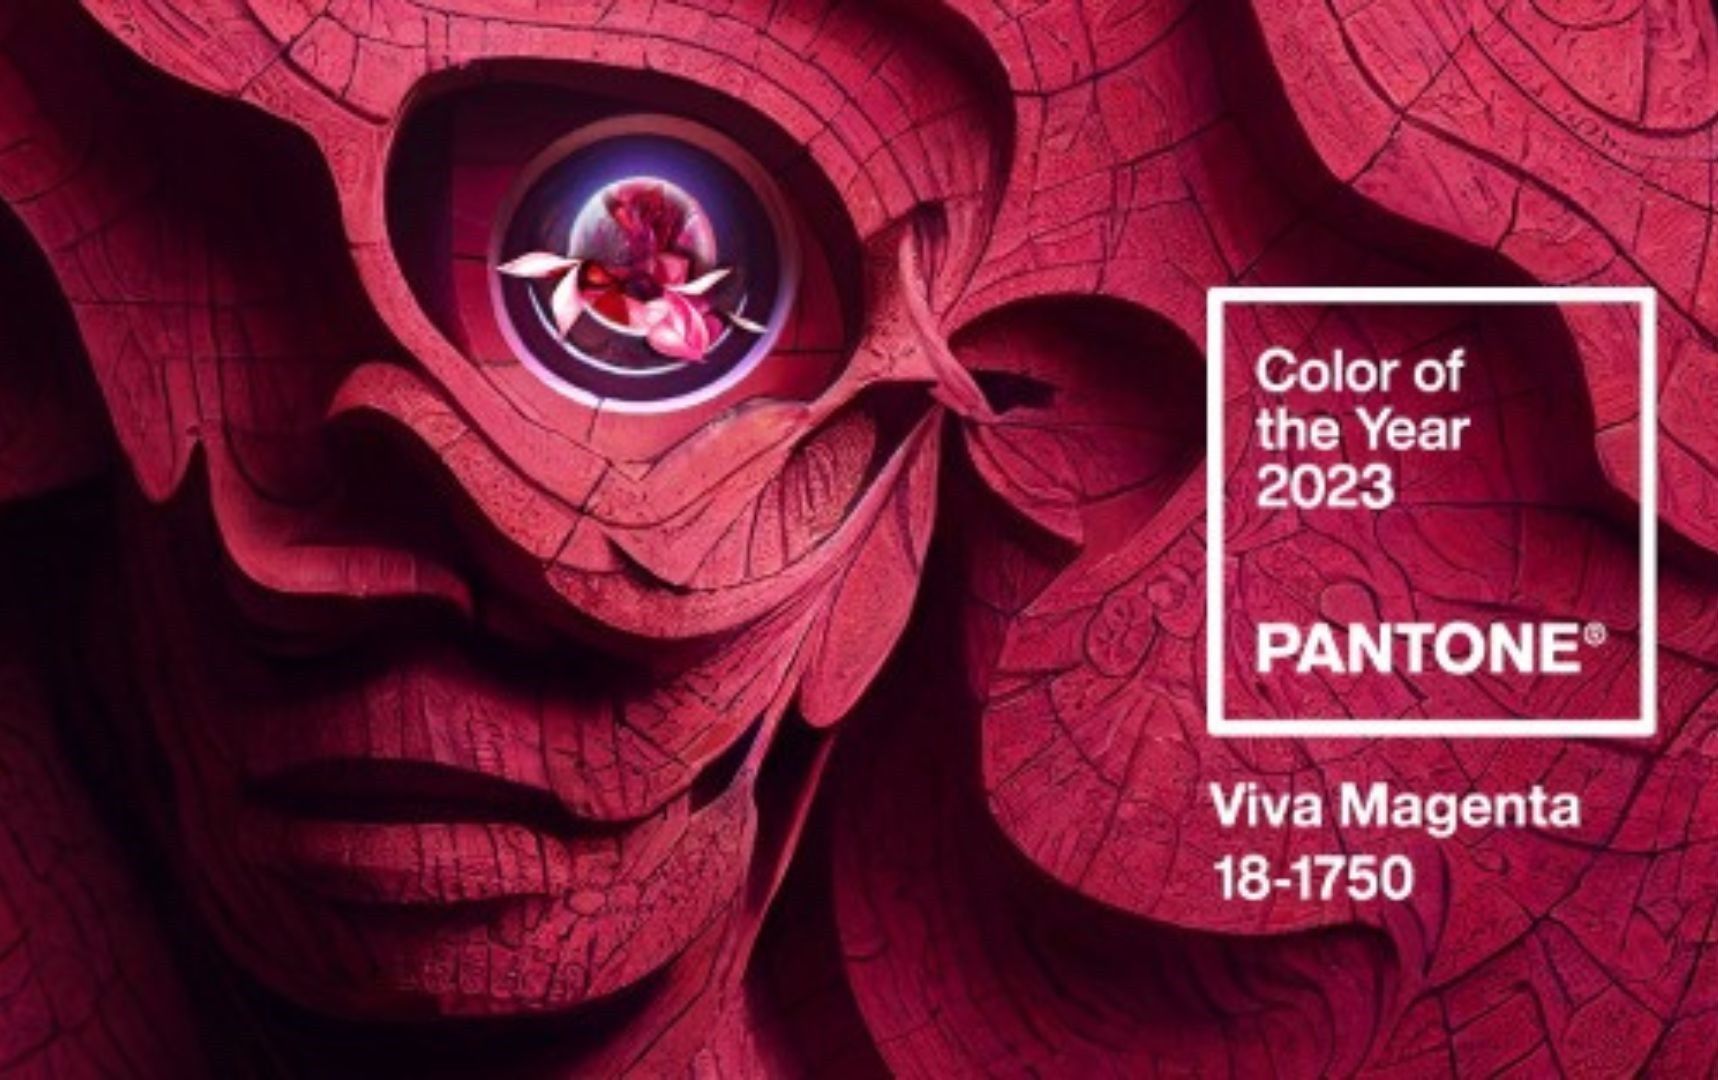 A Pantone 2023 év színe, a Viva Magenta 18-1750